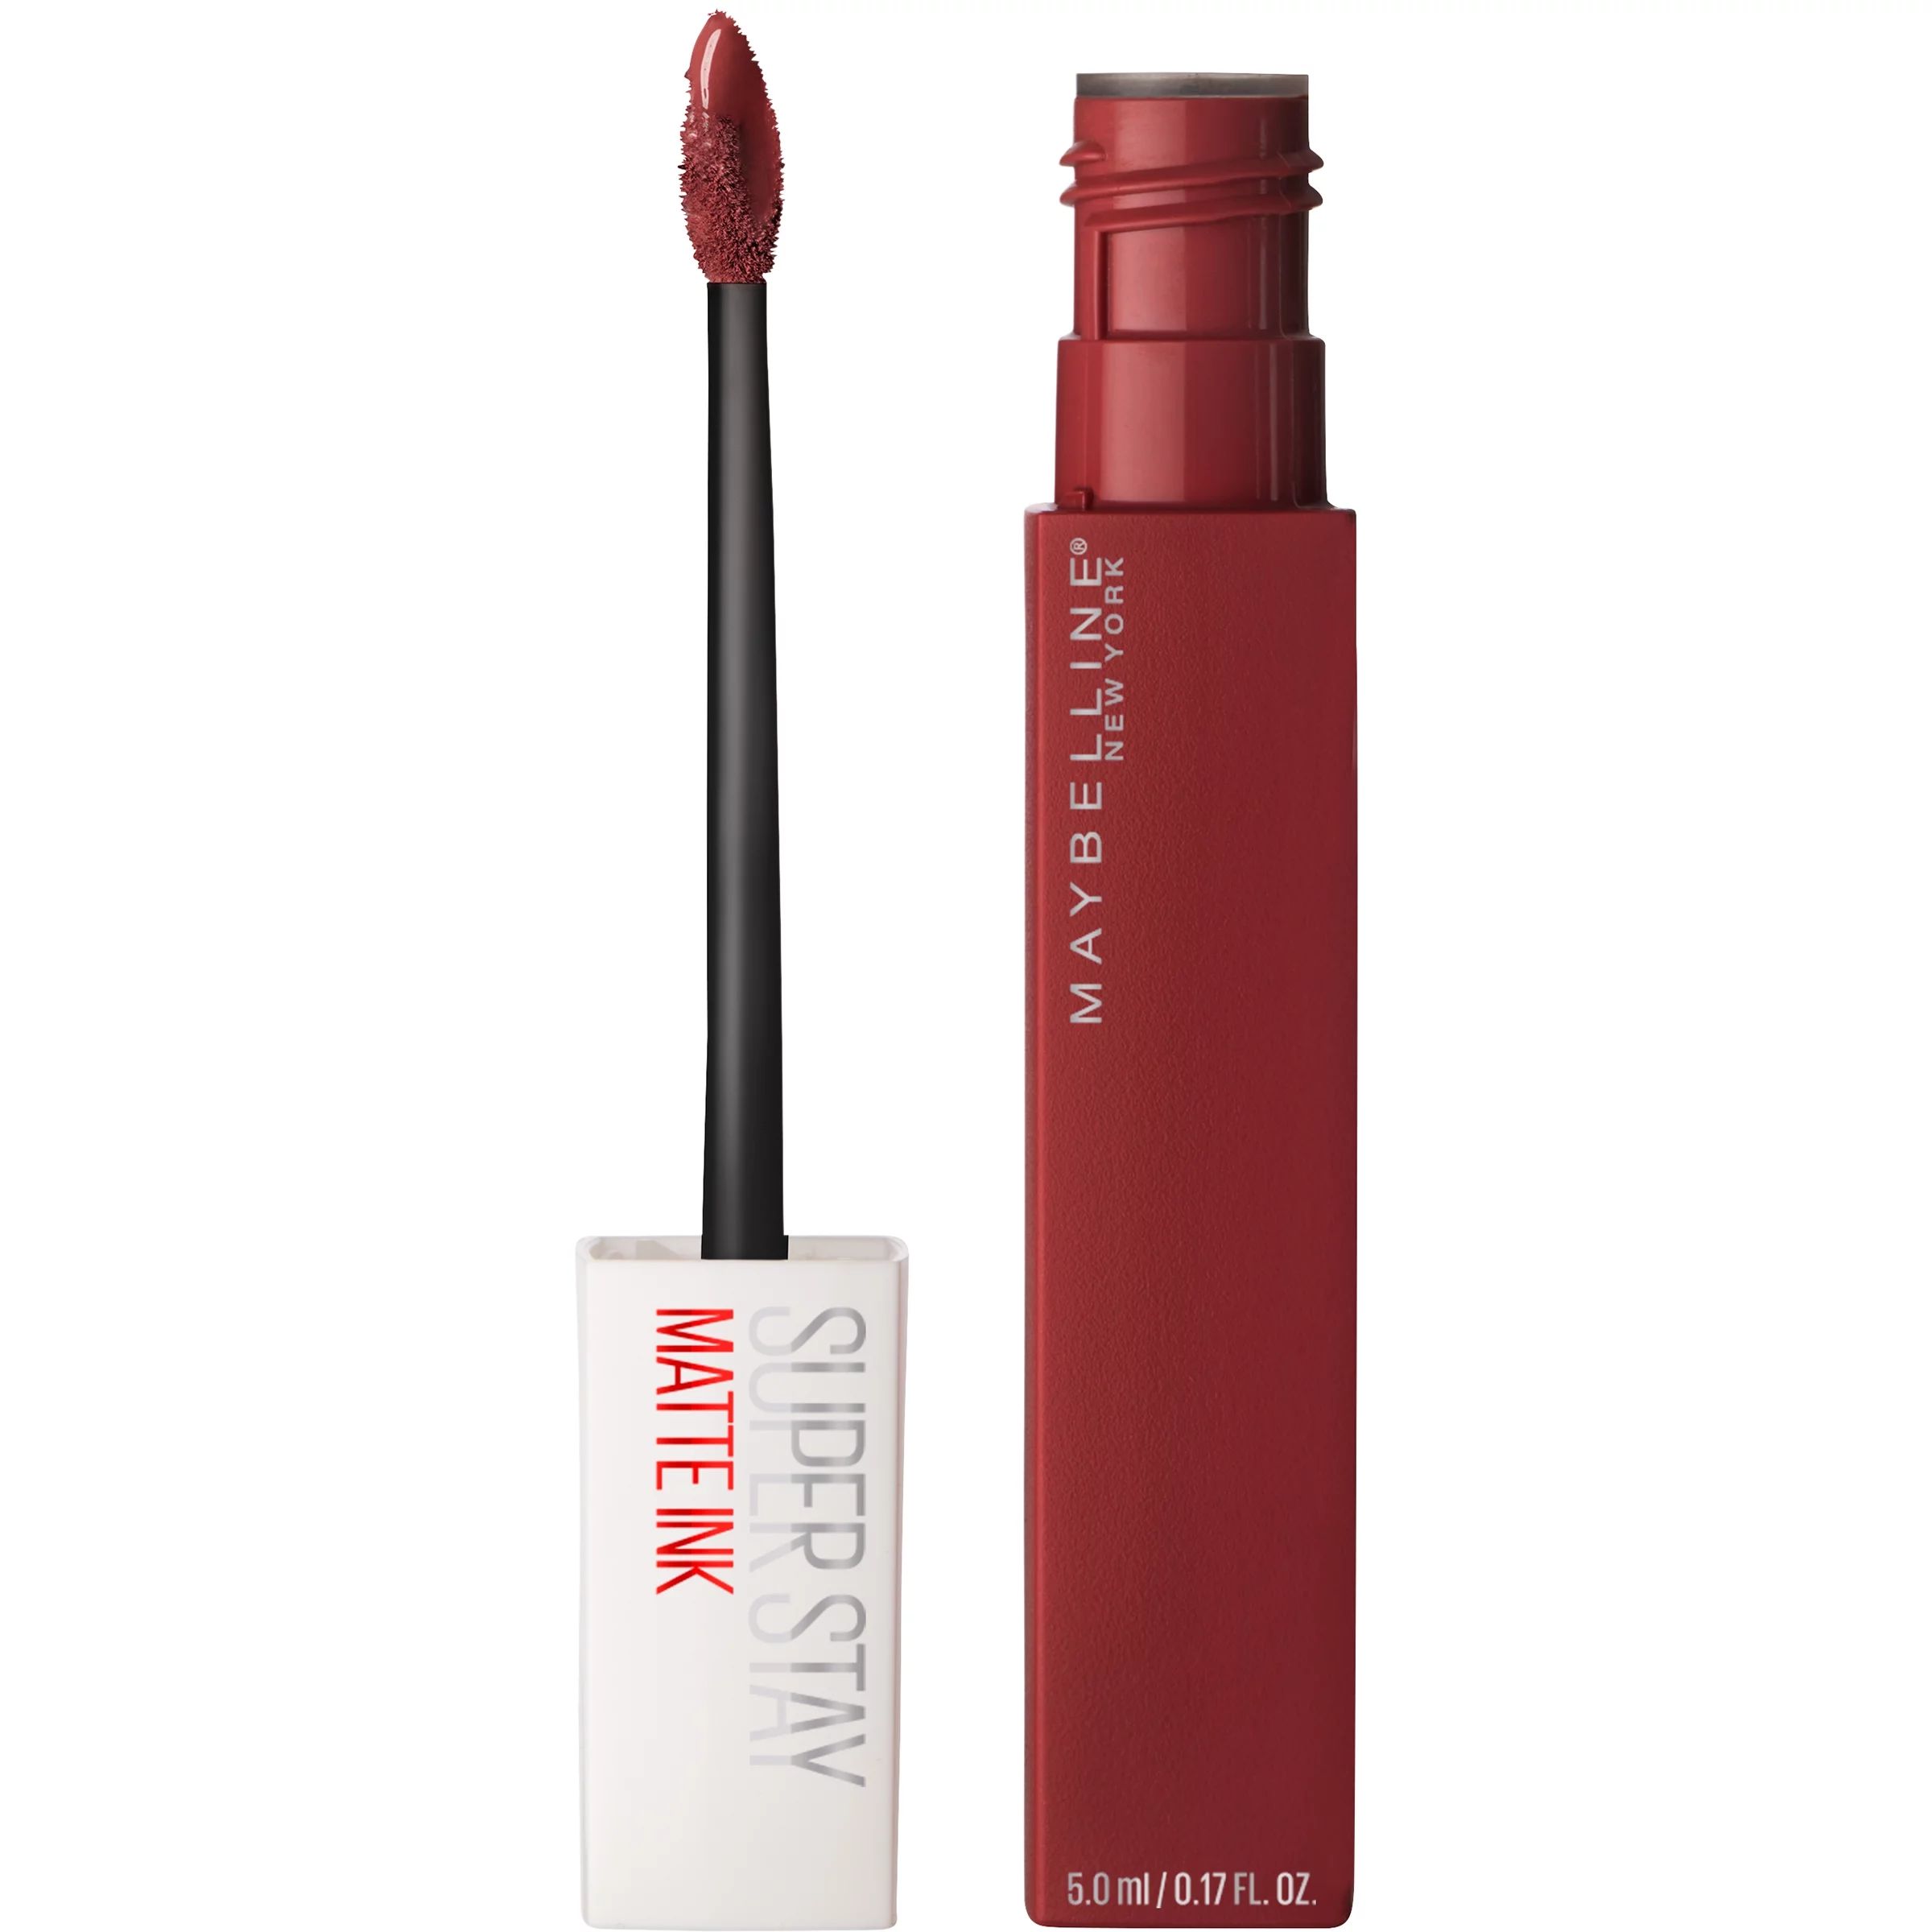 Maybelline Super Stay Matte Ink Liquid Lipstick, Voyager | Walmart (US)